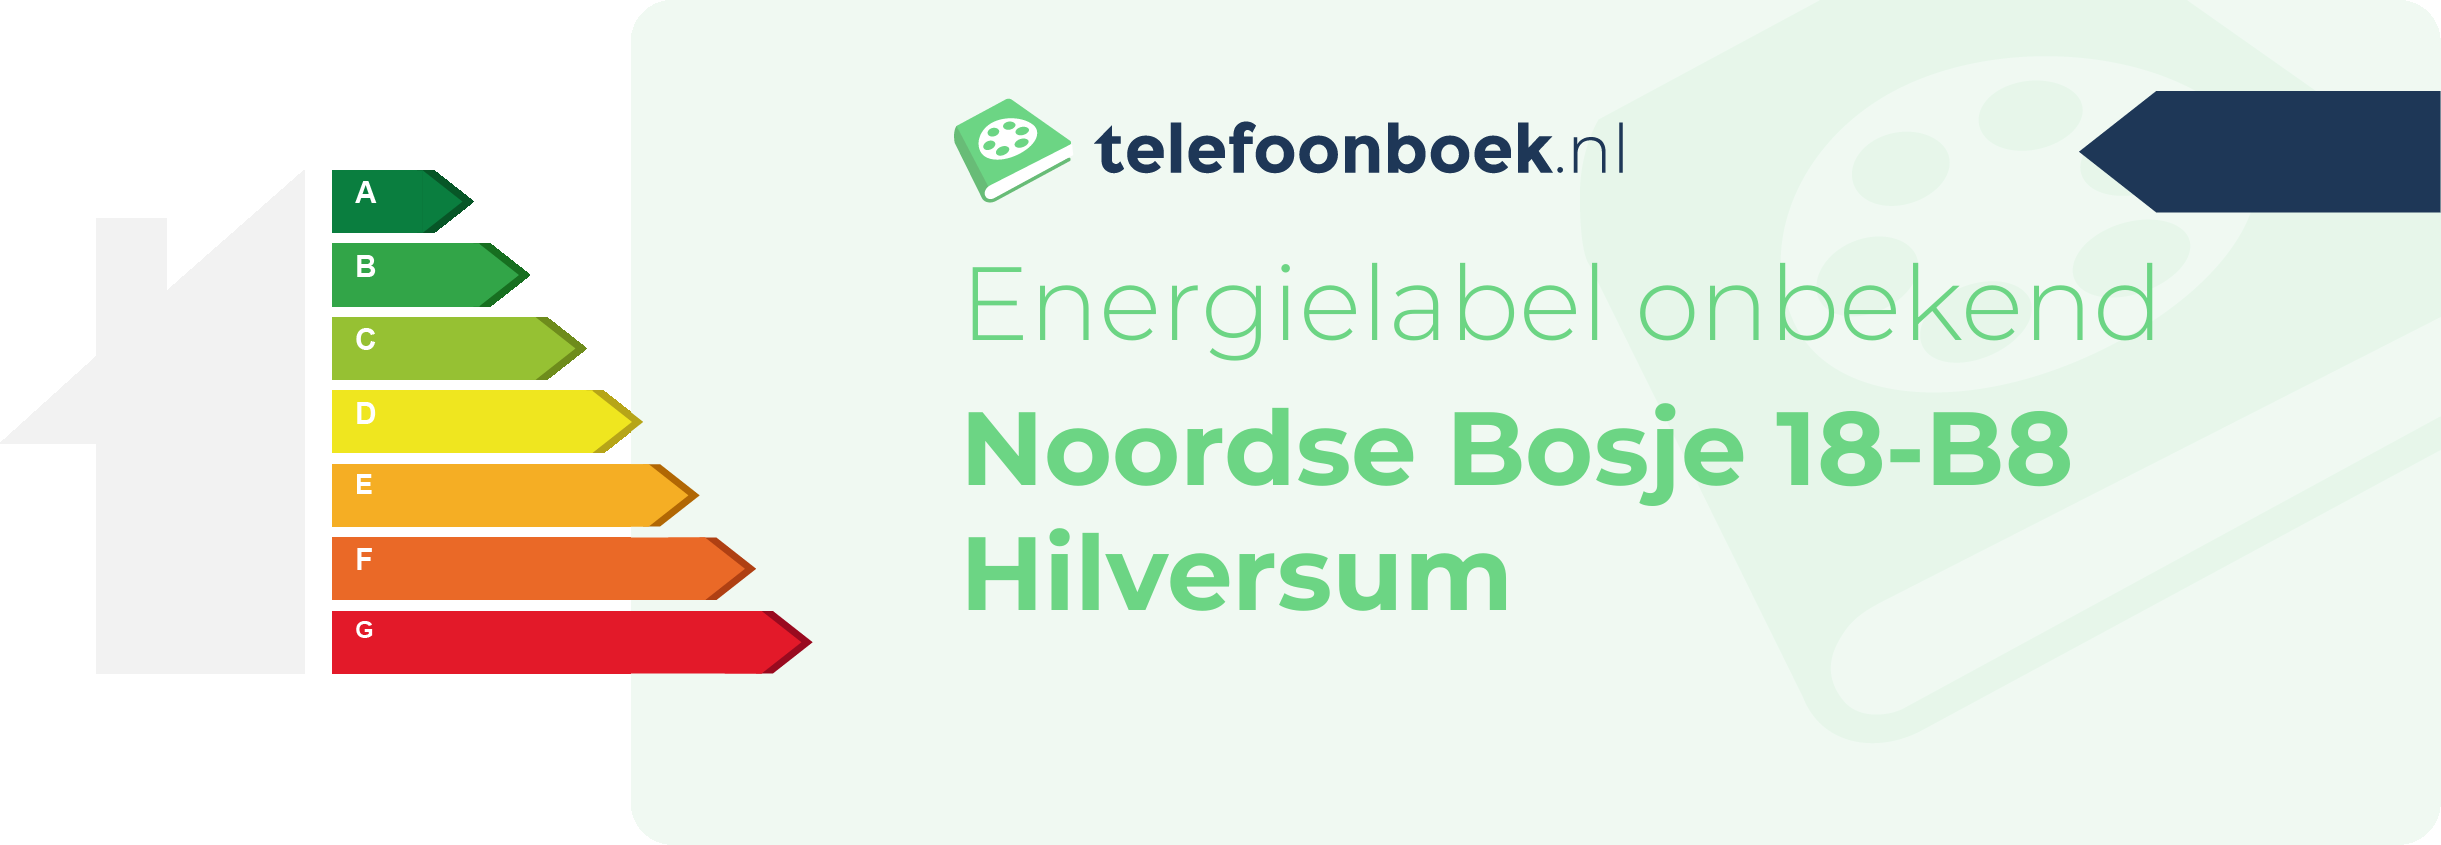 Energielabel Noordse Bosje 18-B8 Hilversum